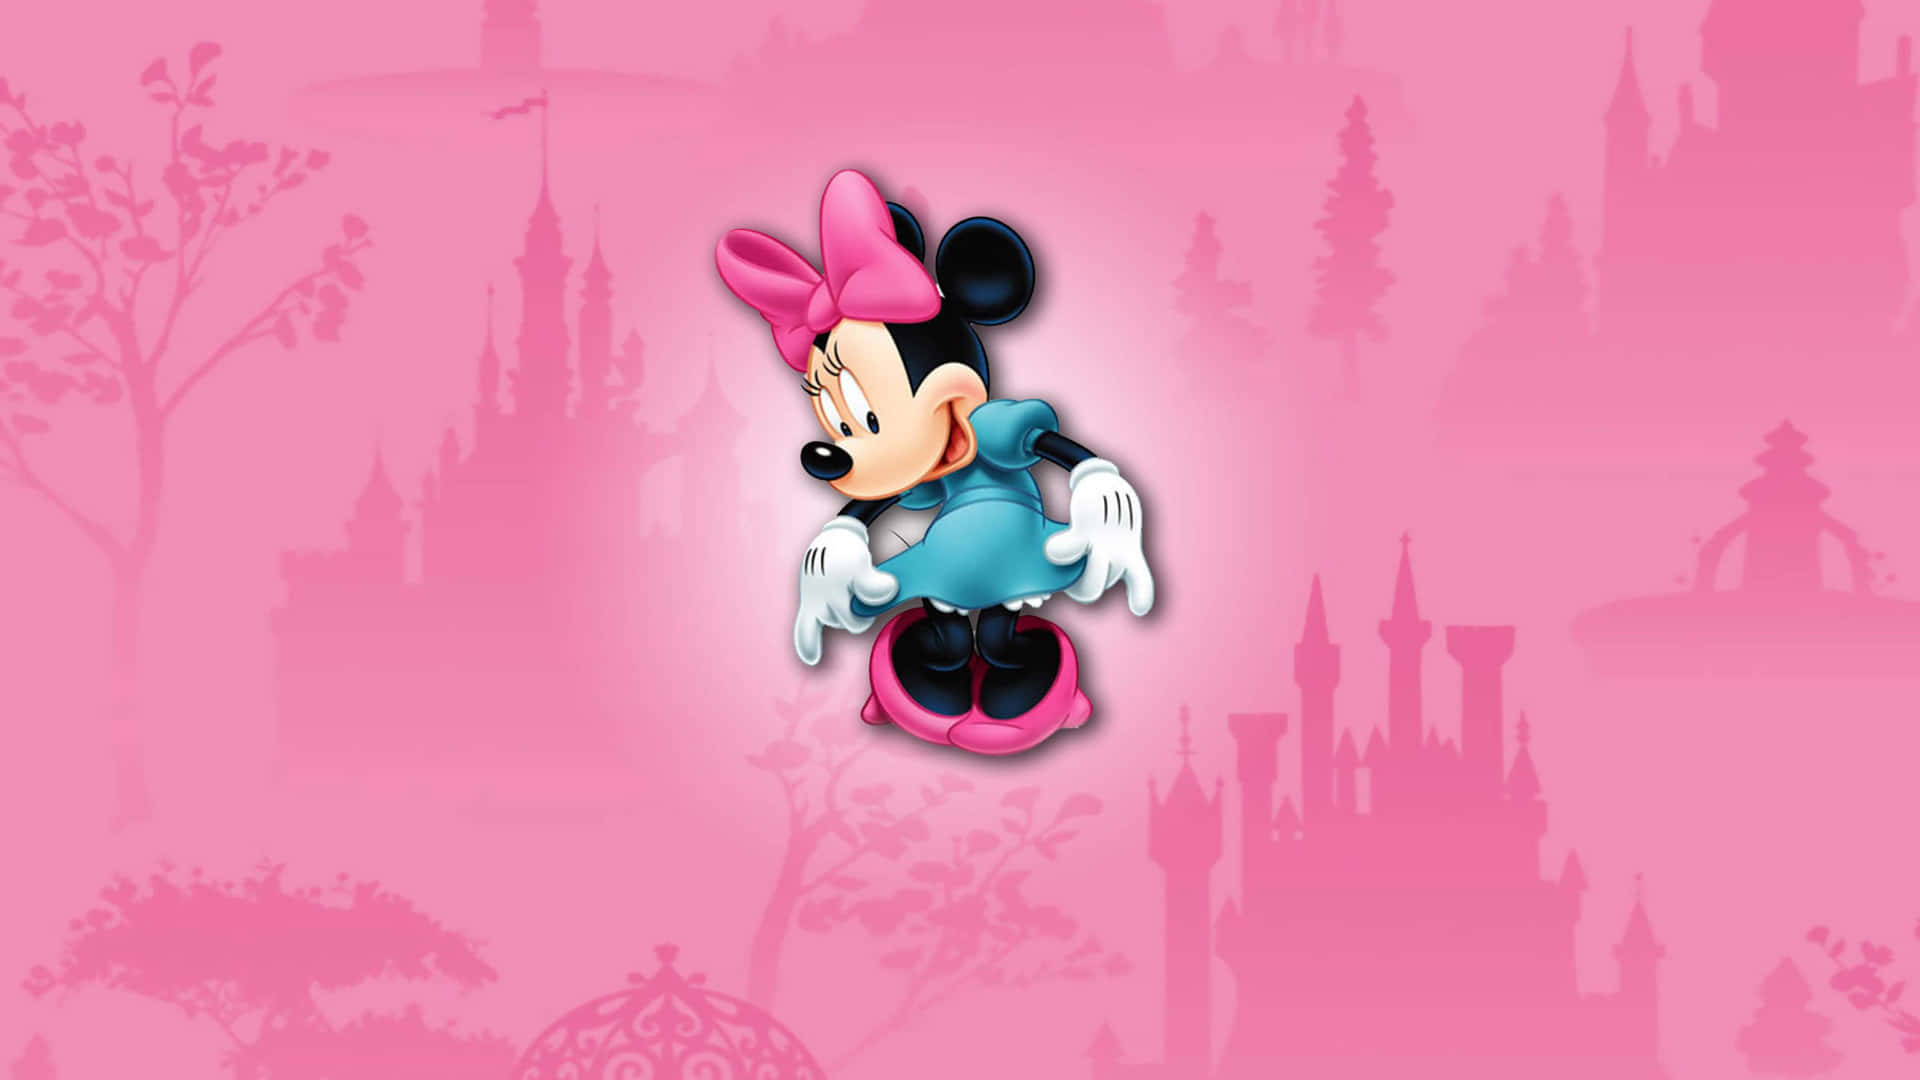 Dieikonische Minnie Mouse In Einem Soften Rosa Outfit Gekleidet. Wallpaper